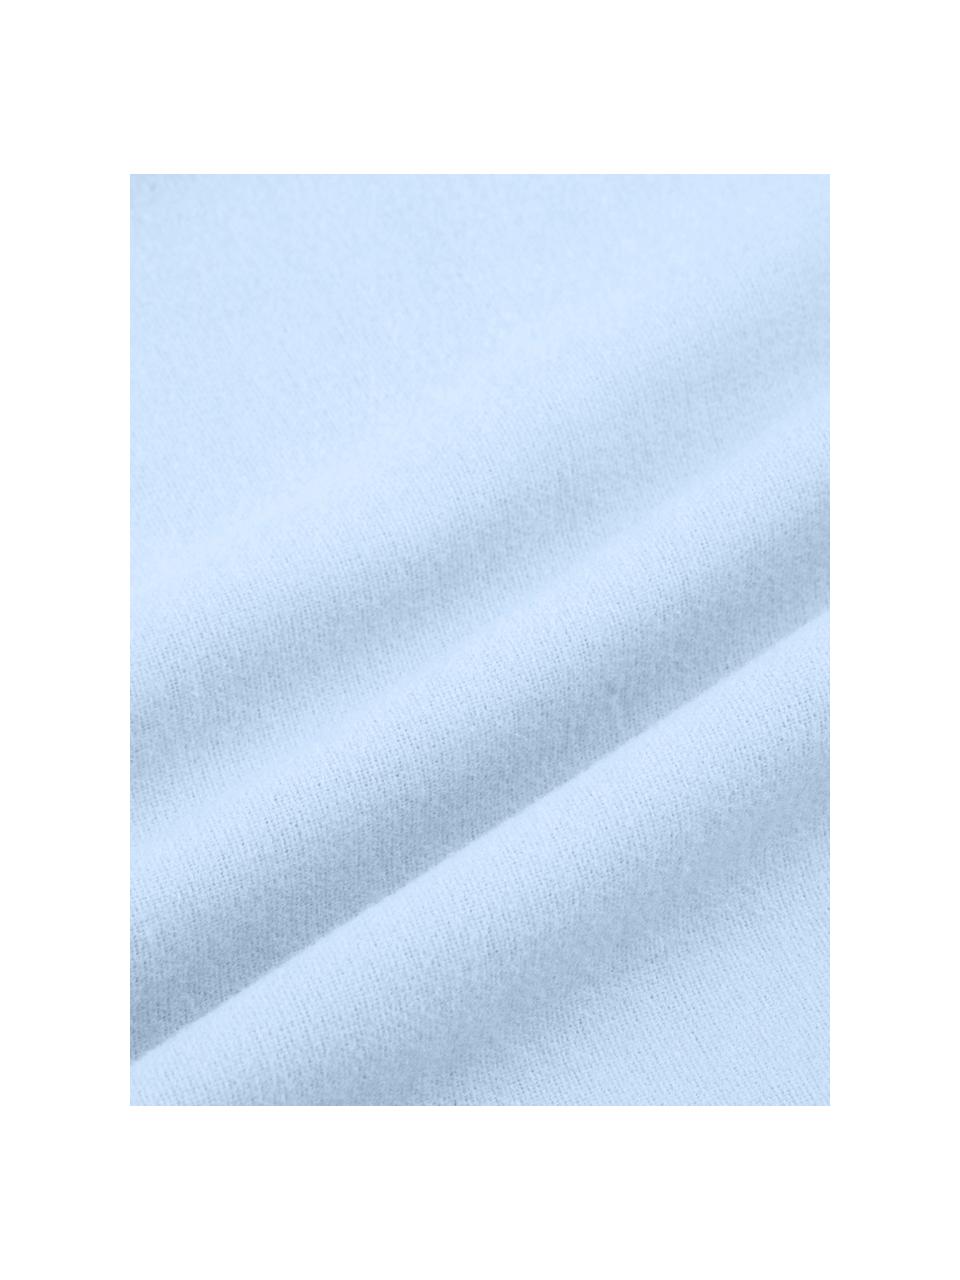 Pościel z flaneli Erica, Jasny niebieski, 240 x 220 cm + 2 poduszki 80 x 80